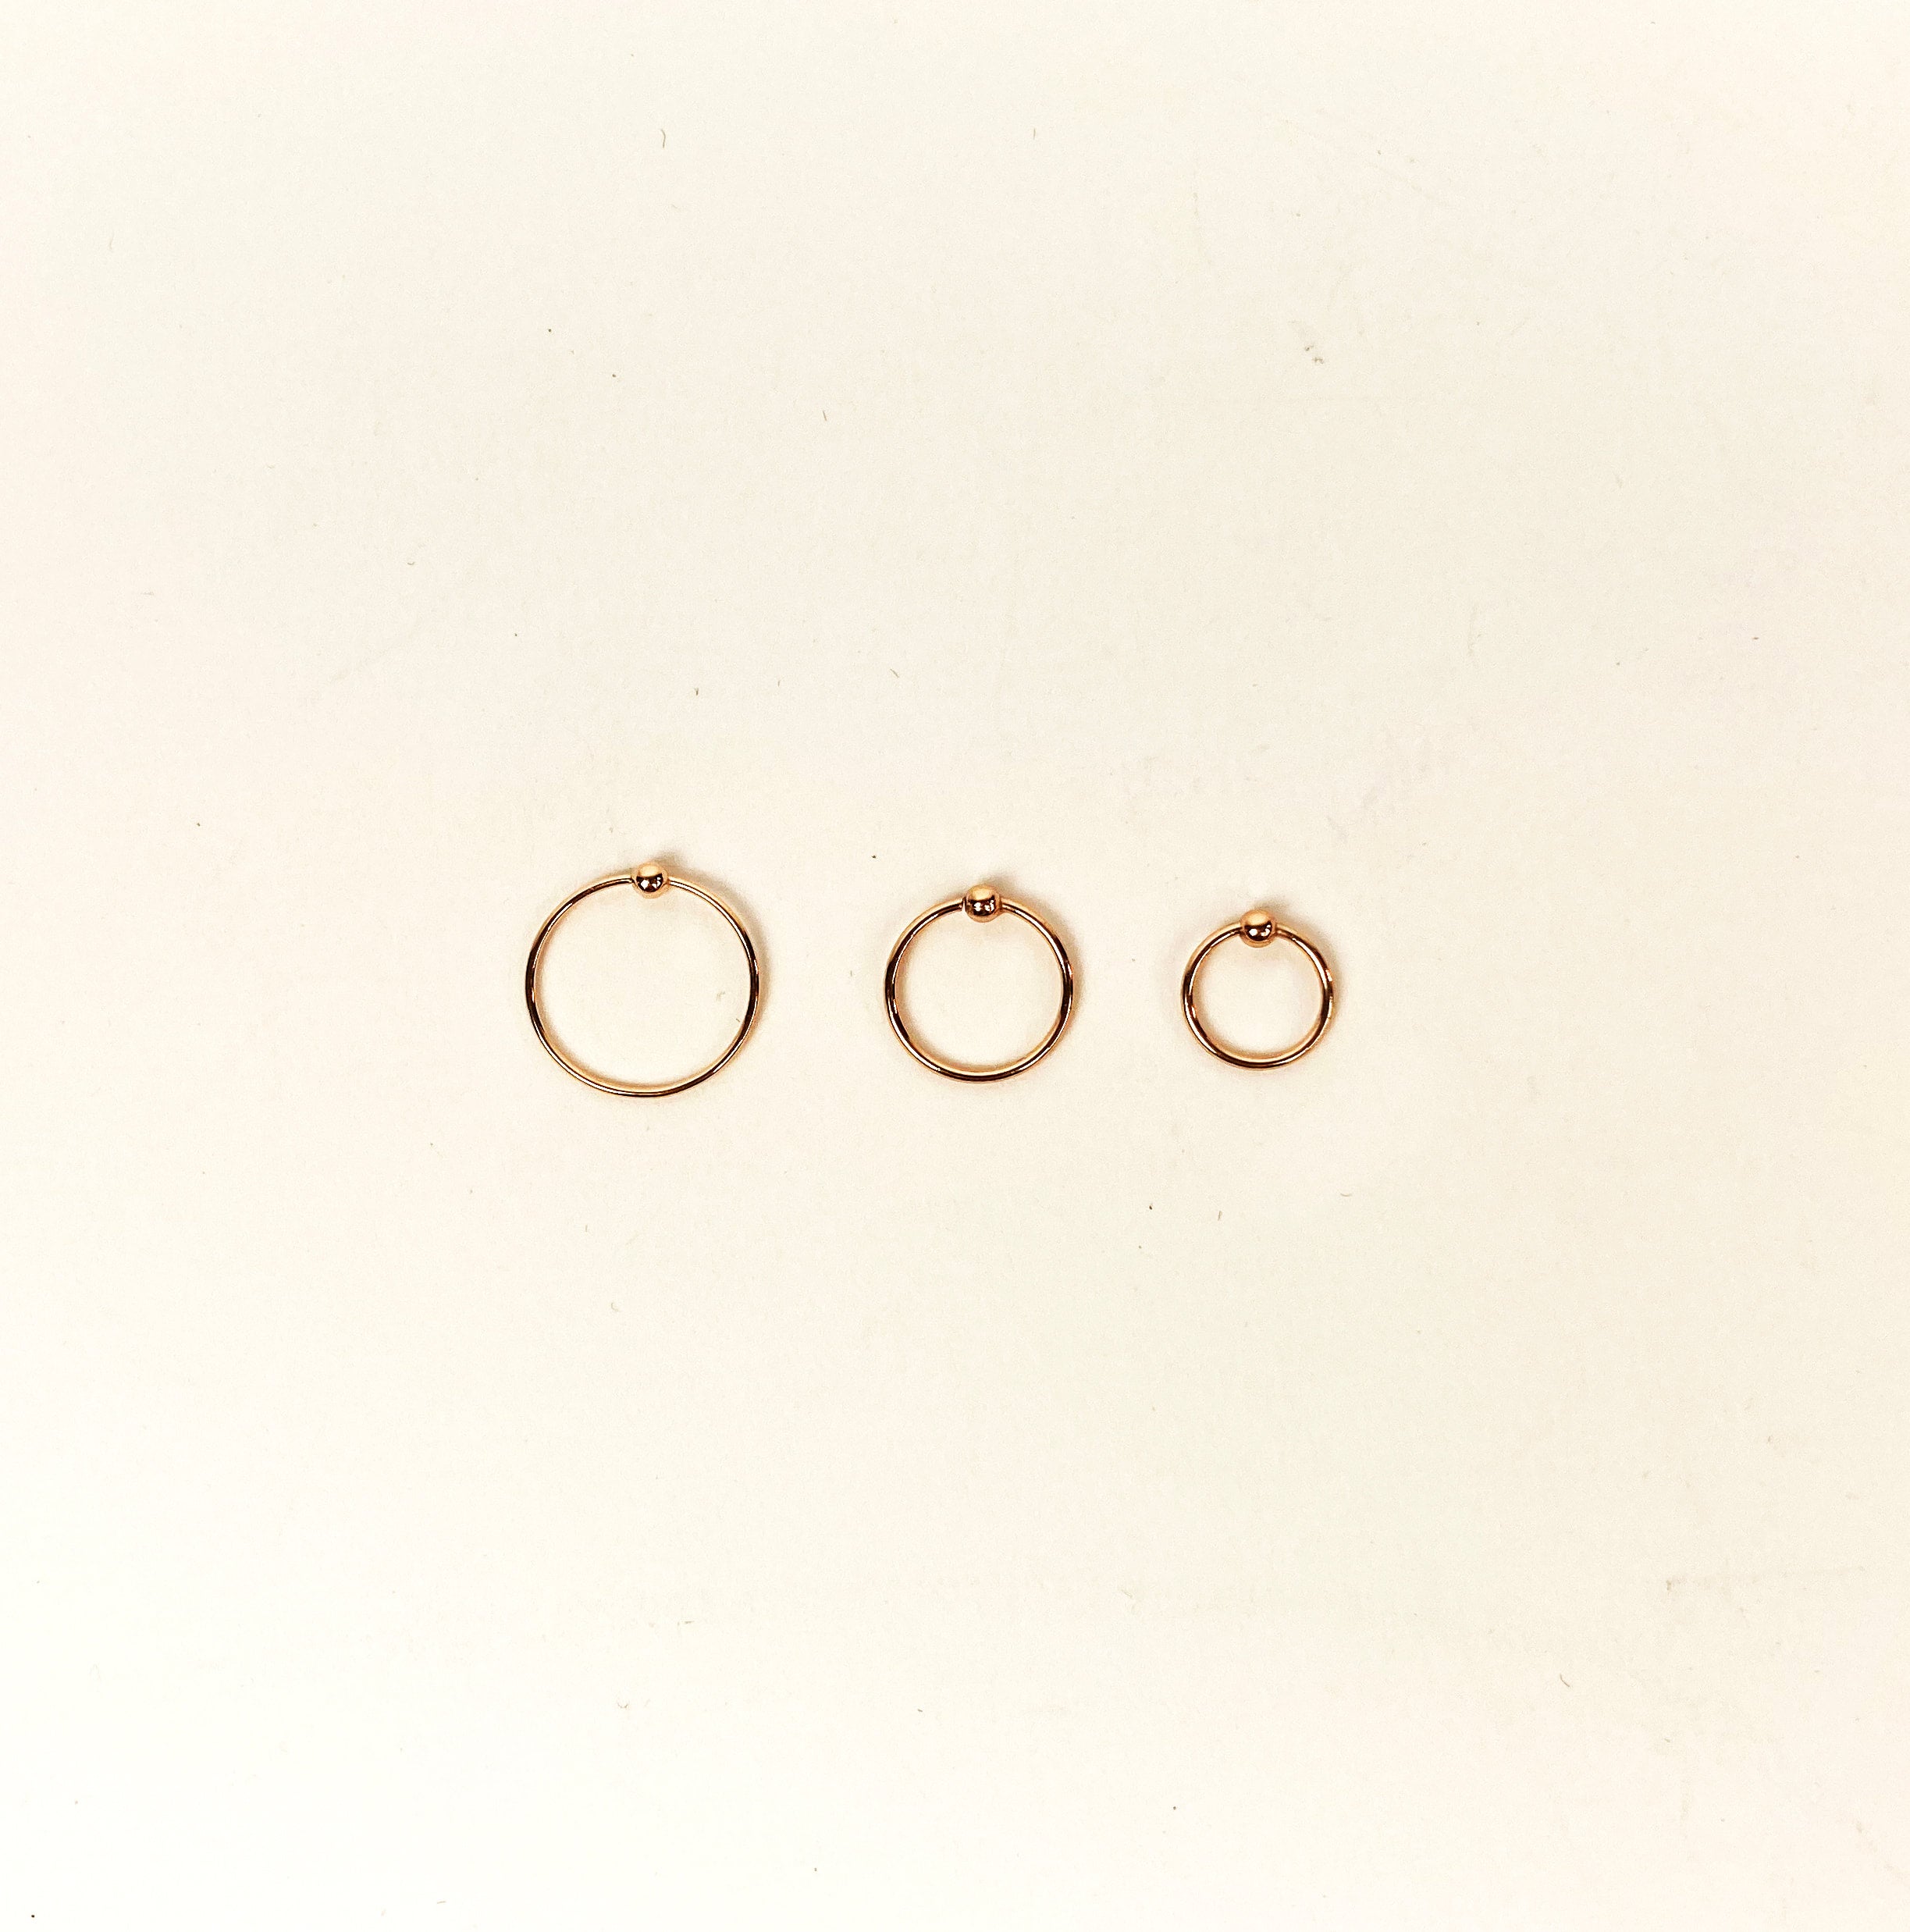 Amazon.com: 14k Rose Gold Filled Adjustable Metal Hoop Nose Ring - 24 Gauge  5-6mm : Handmade Products